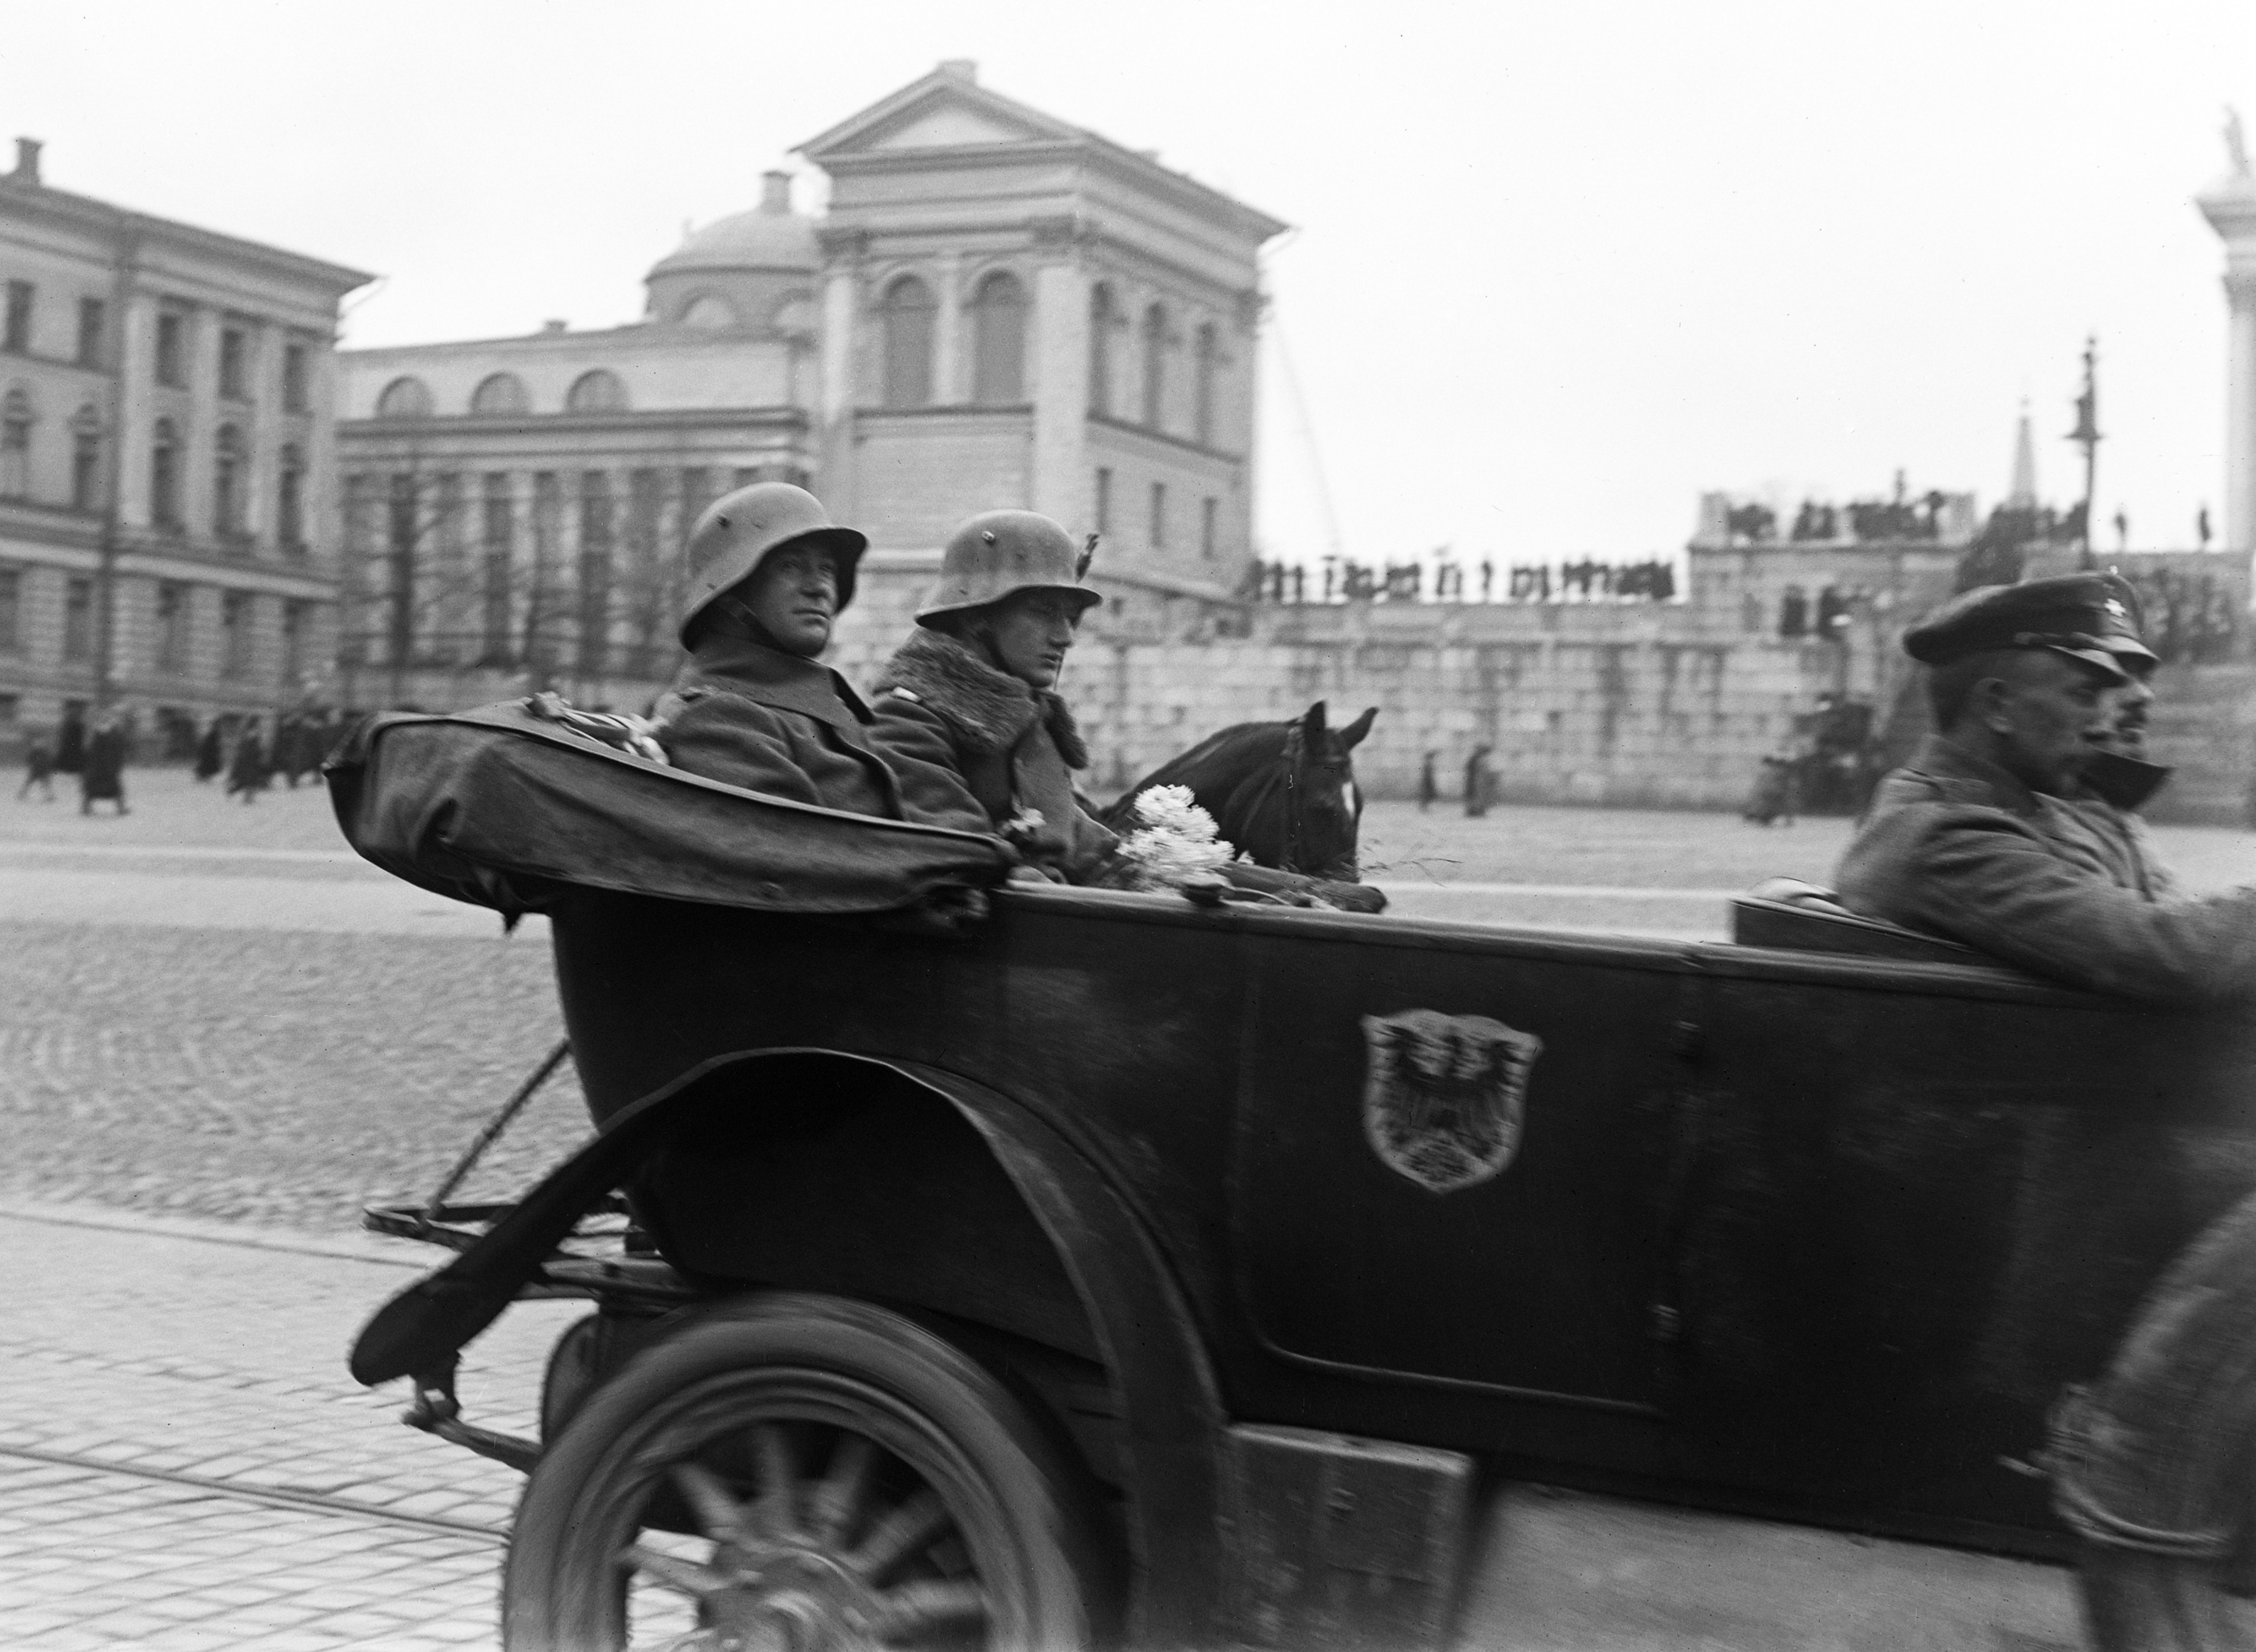 Helsingin valtaus, saksalaisten apujoukkojen paraati Senaatintorilla 14.4.1918. Esikuntaan kuuluvia autossa.